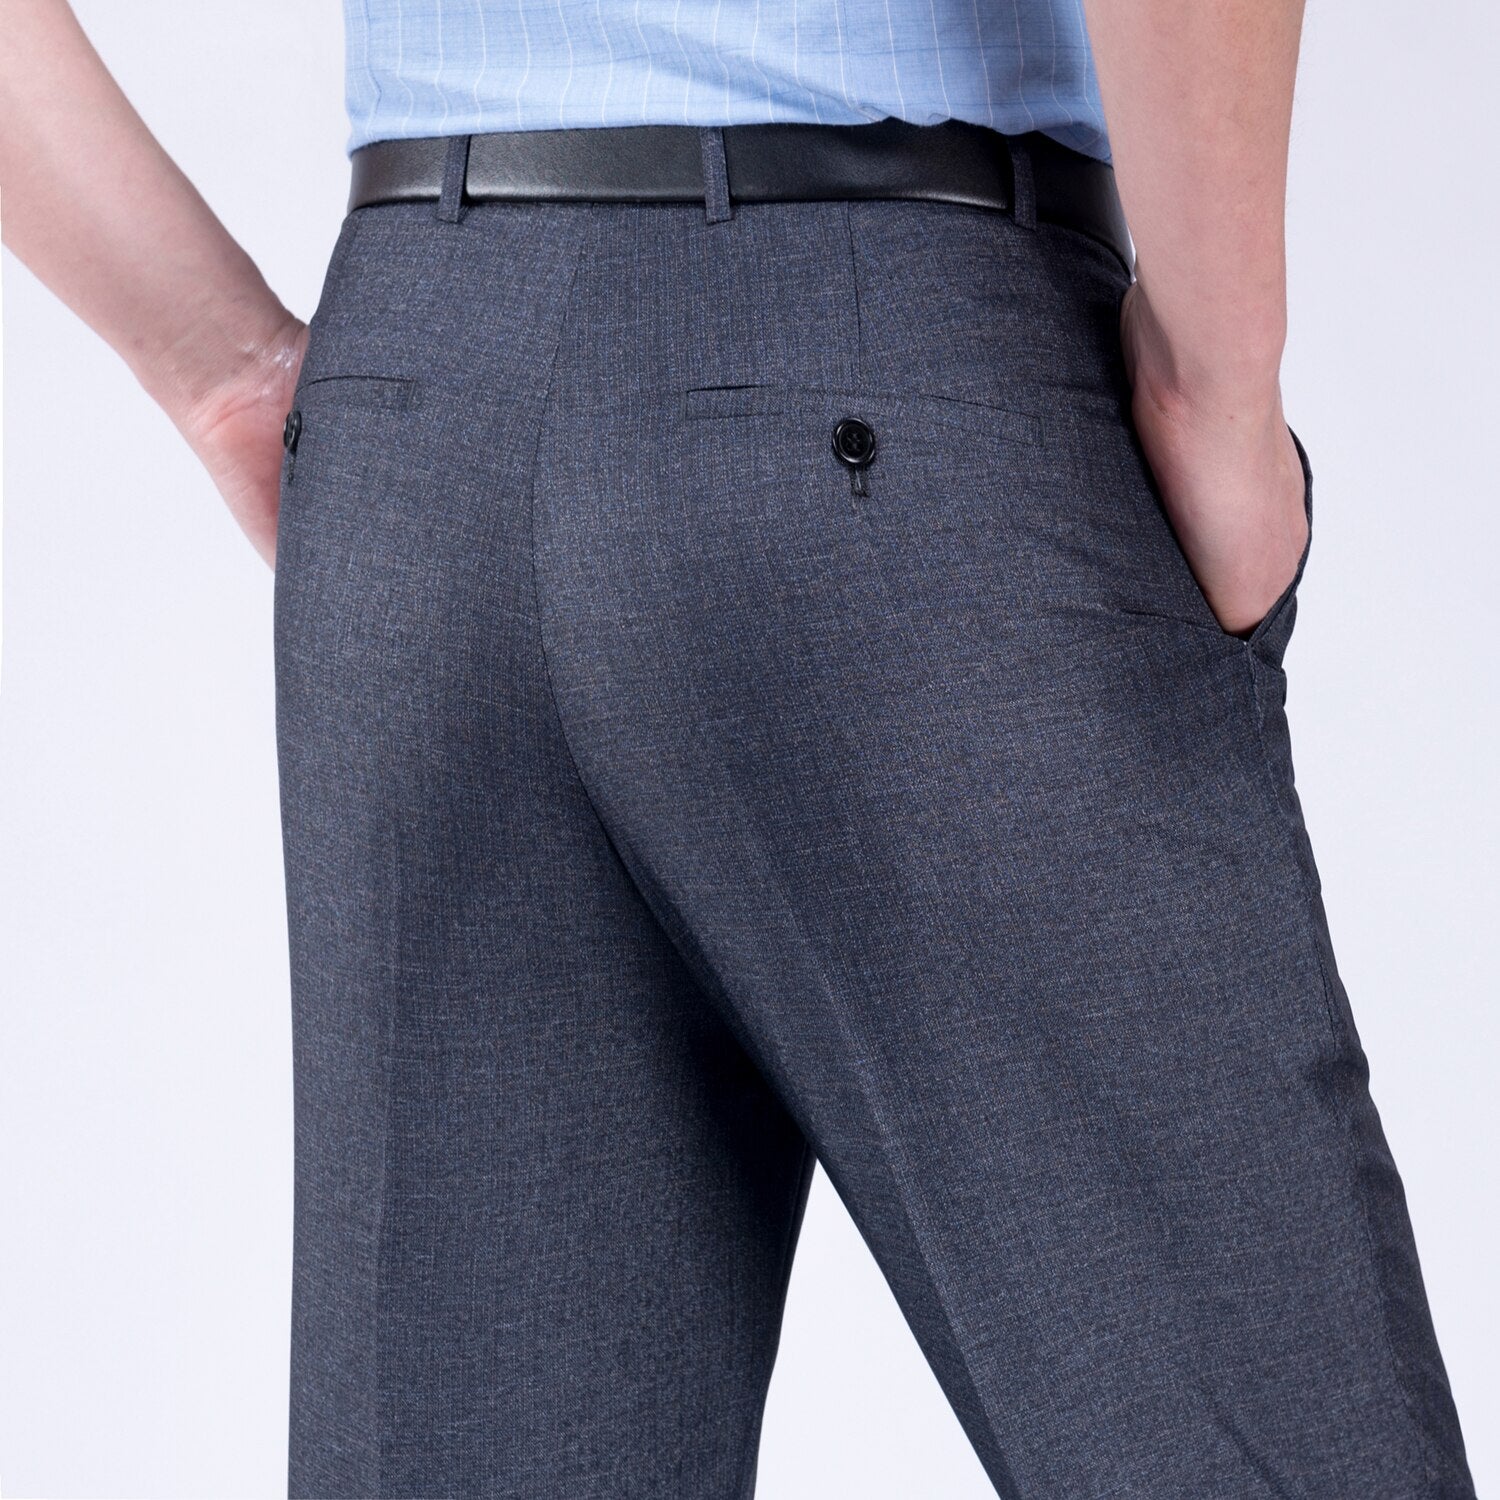 8 Colors Big Size 29-56 Business Suit Pants Men Casual Wrinkle-Resistant